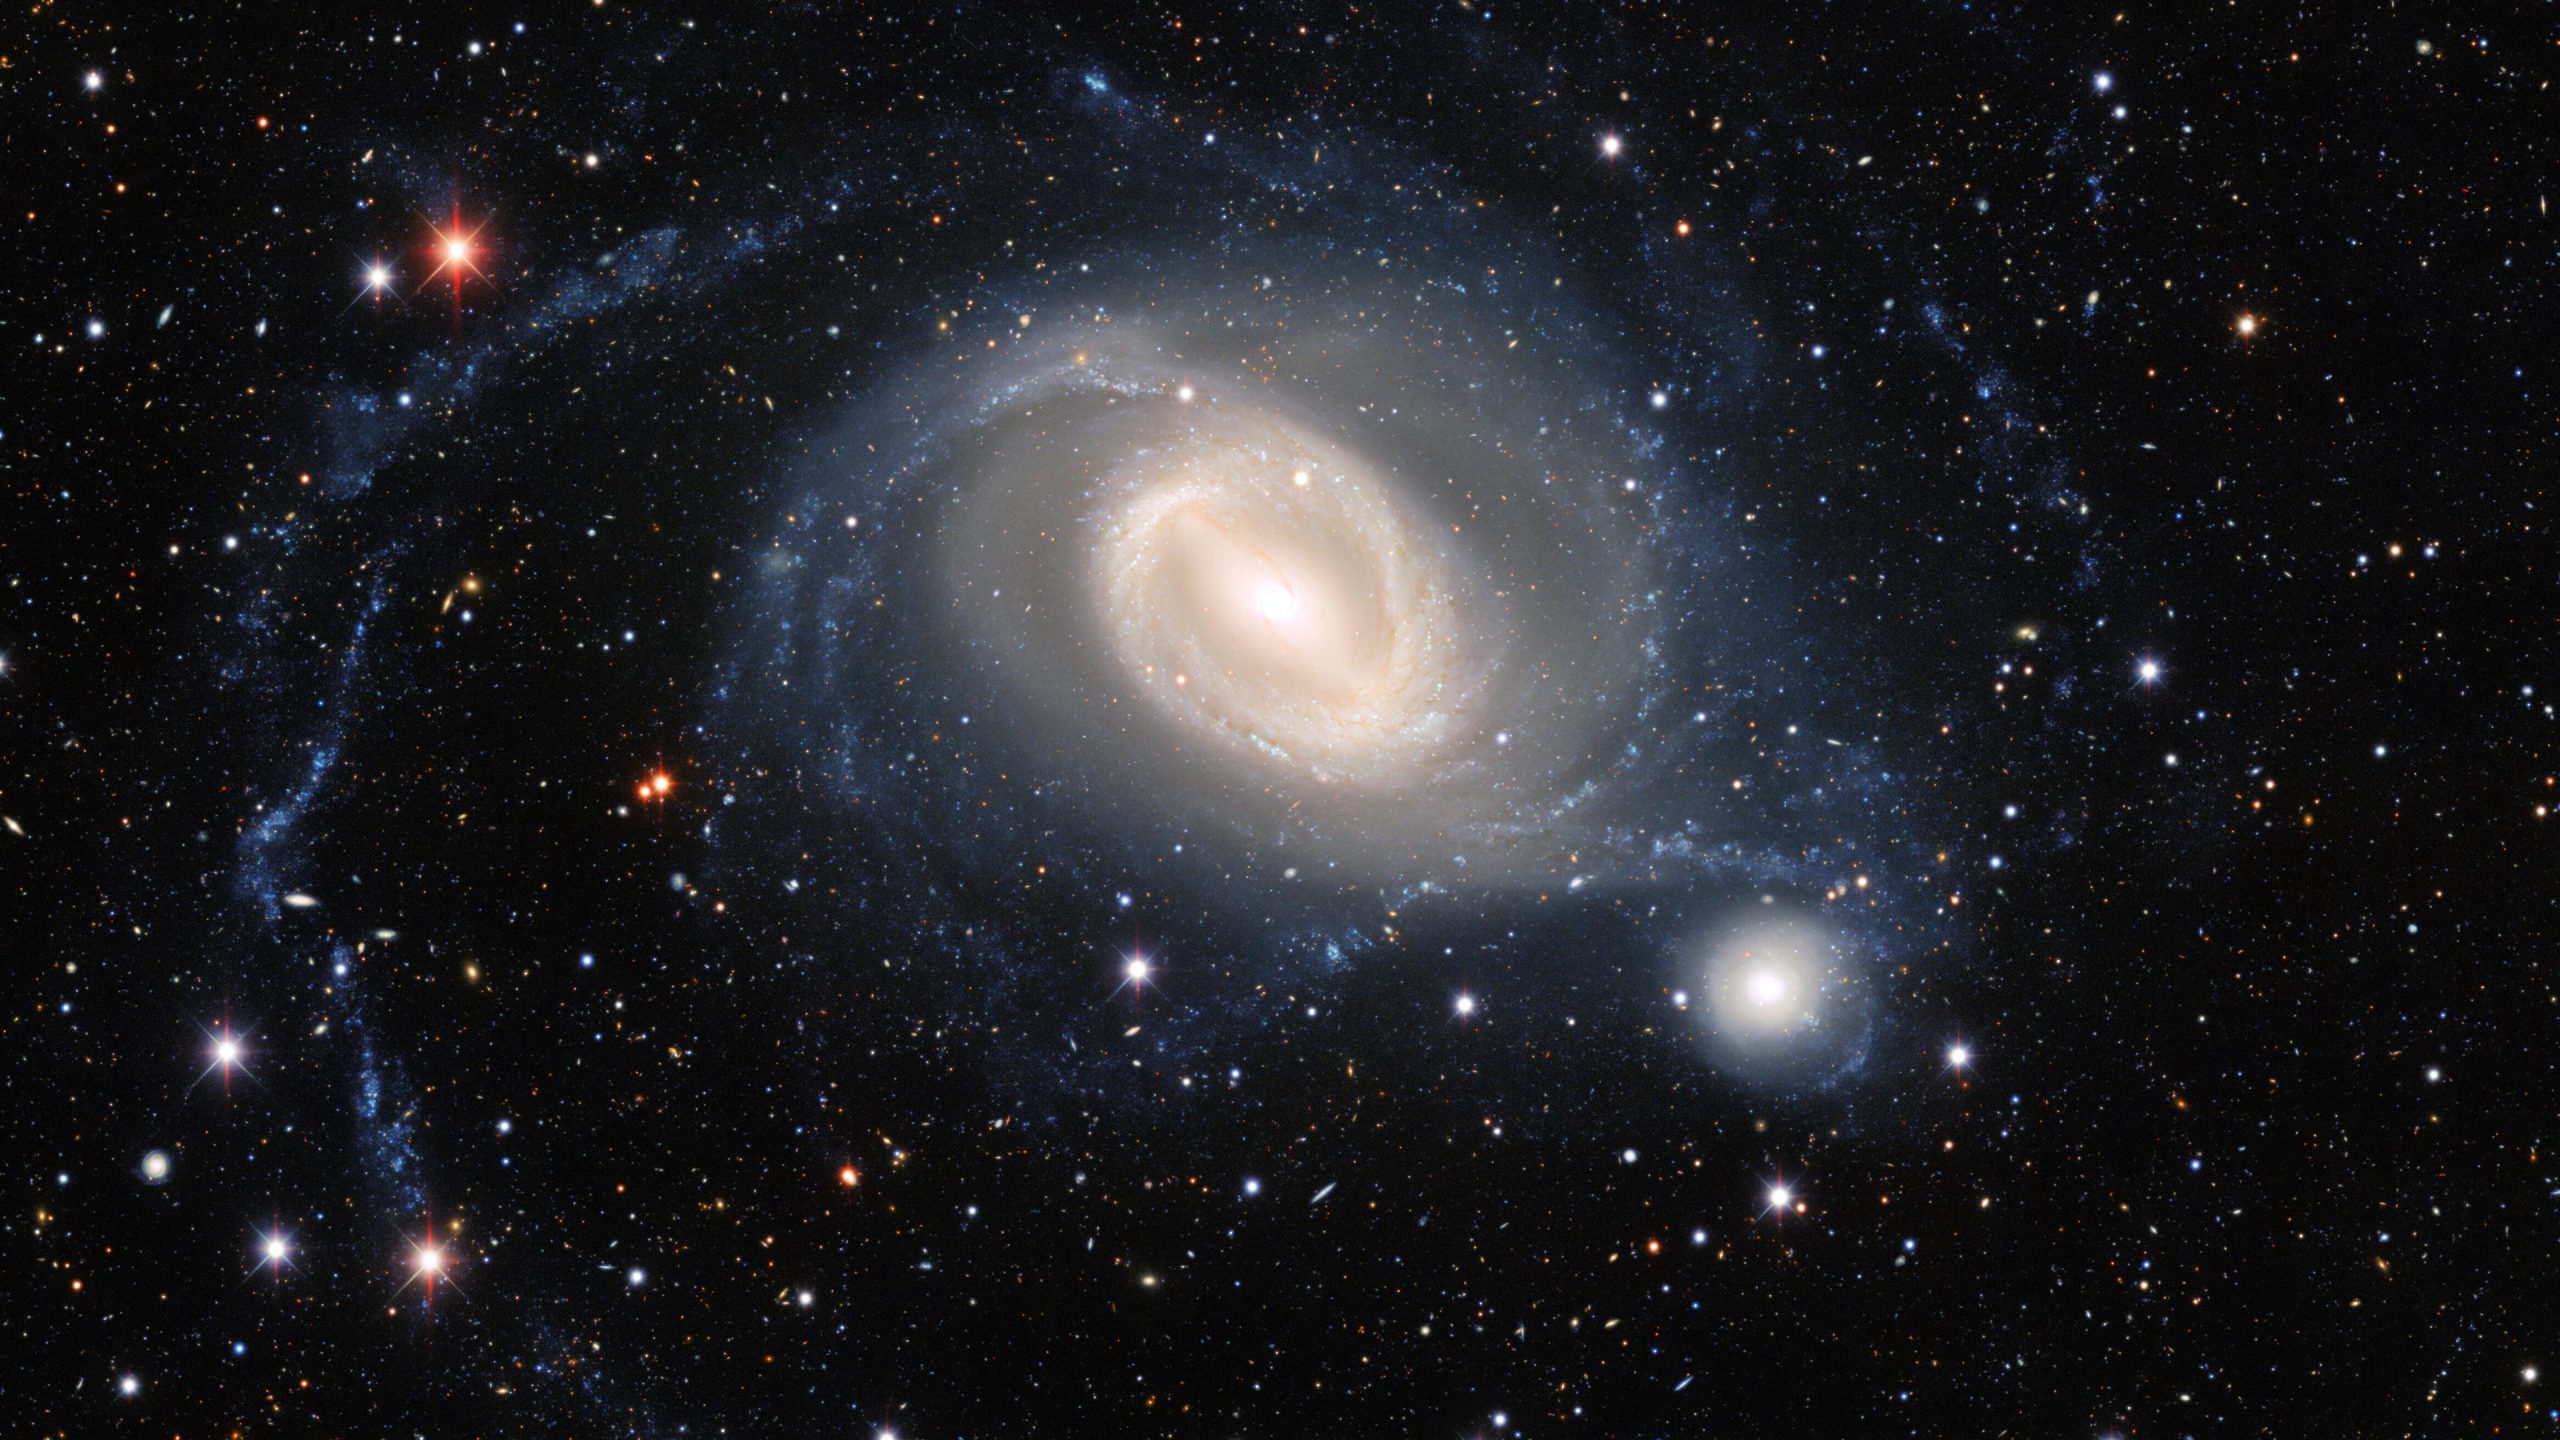 تصوير باليه المجرة بواسطة كاميرا الطاقة المظلمة الحديثة